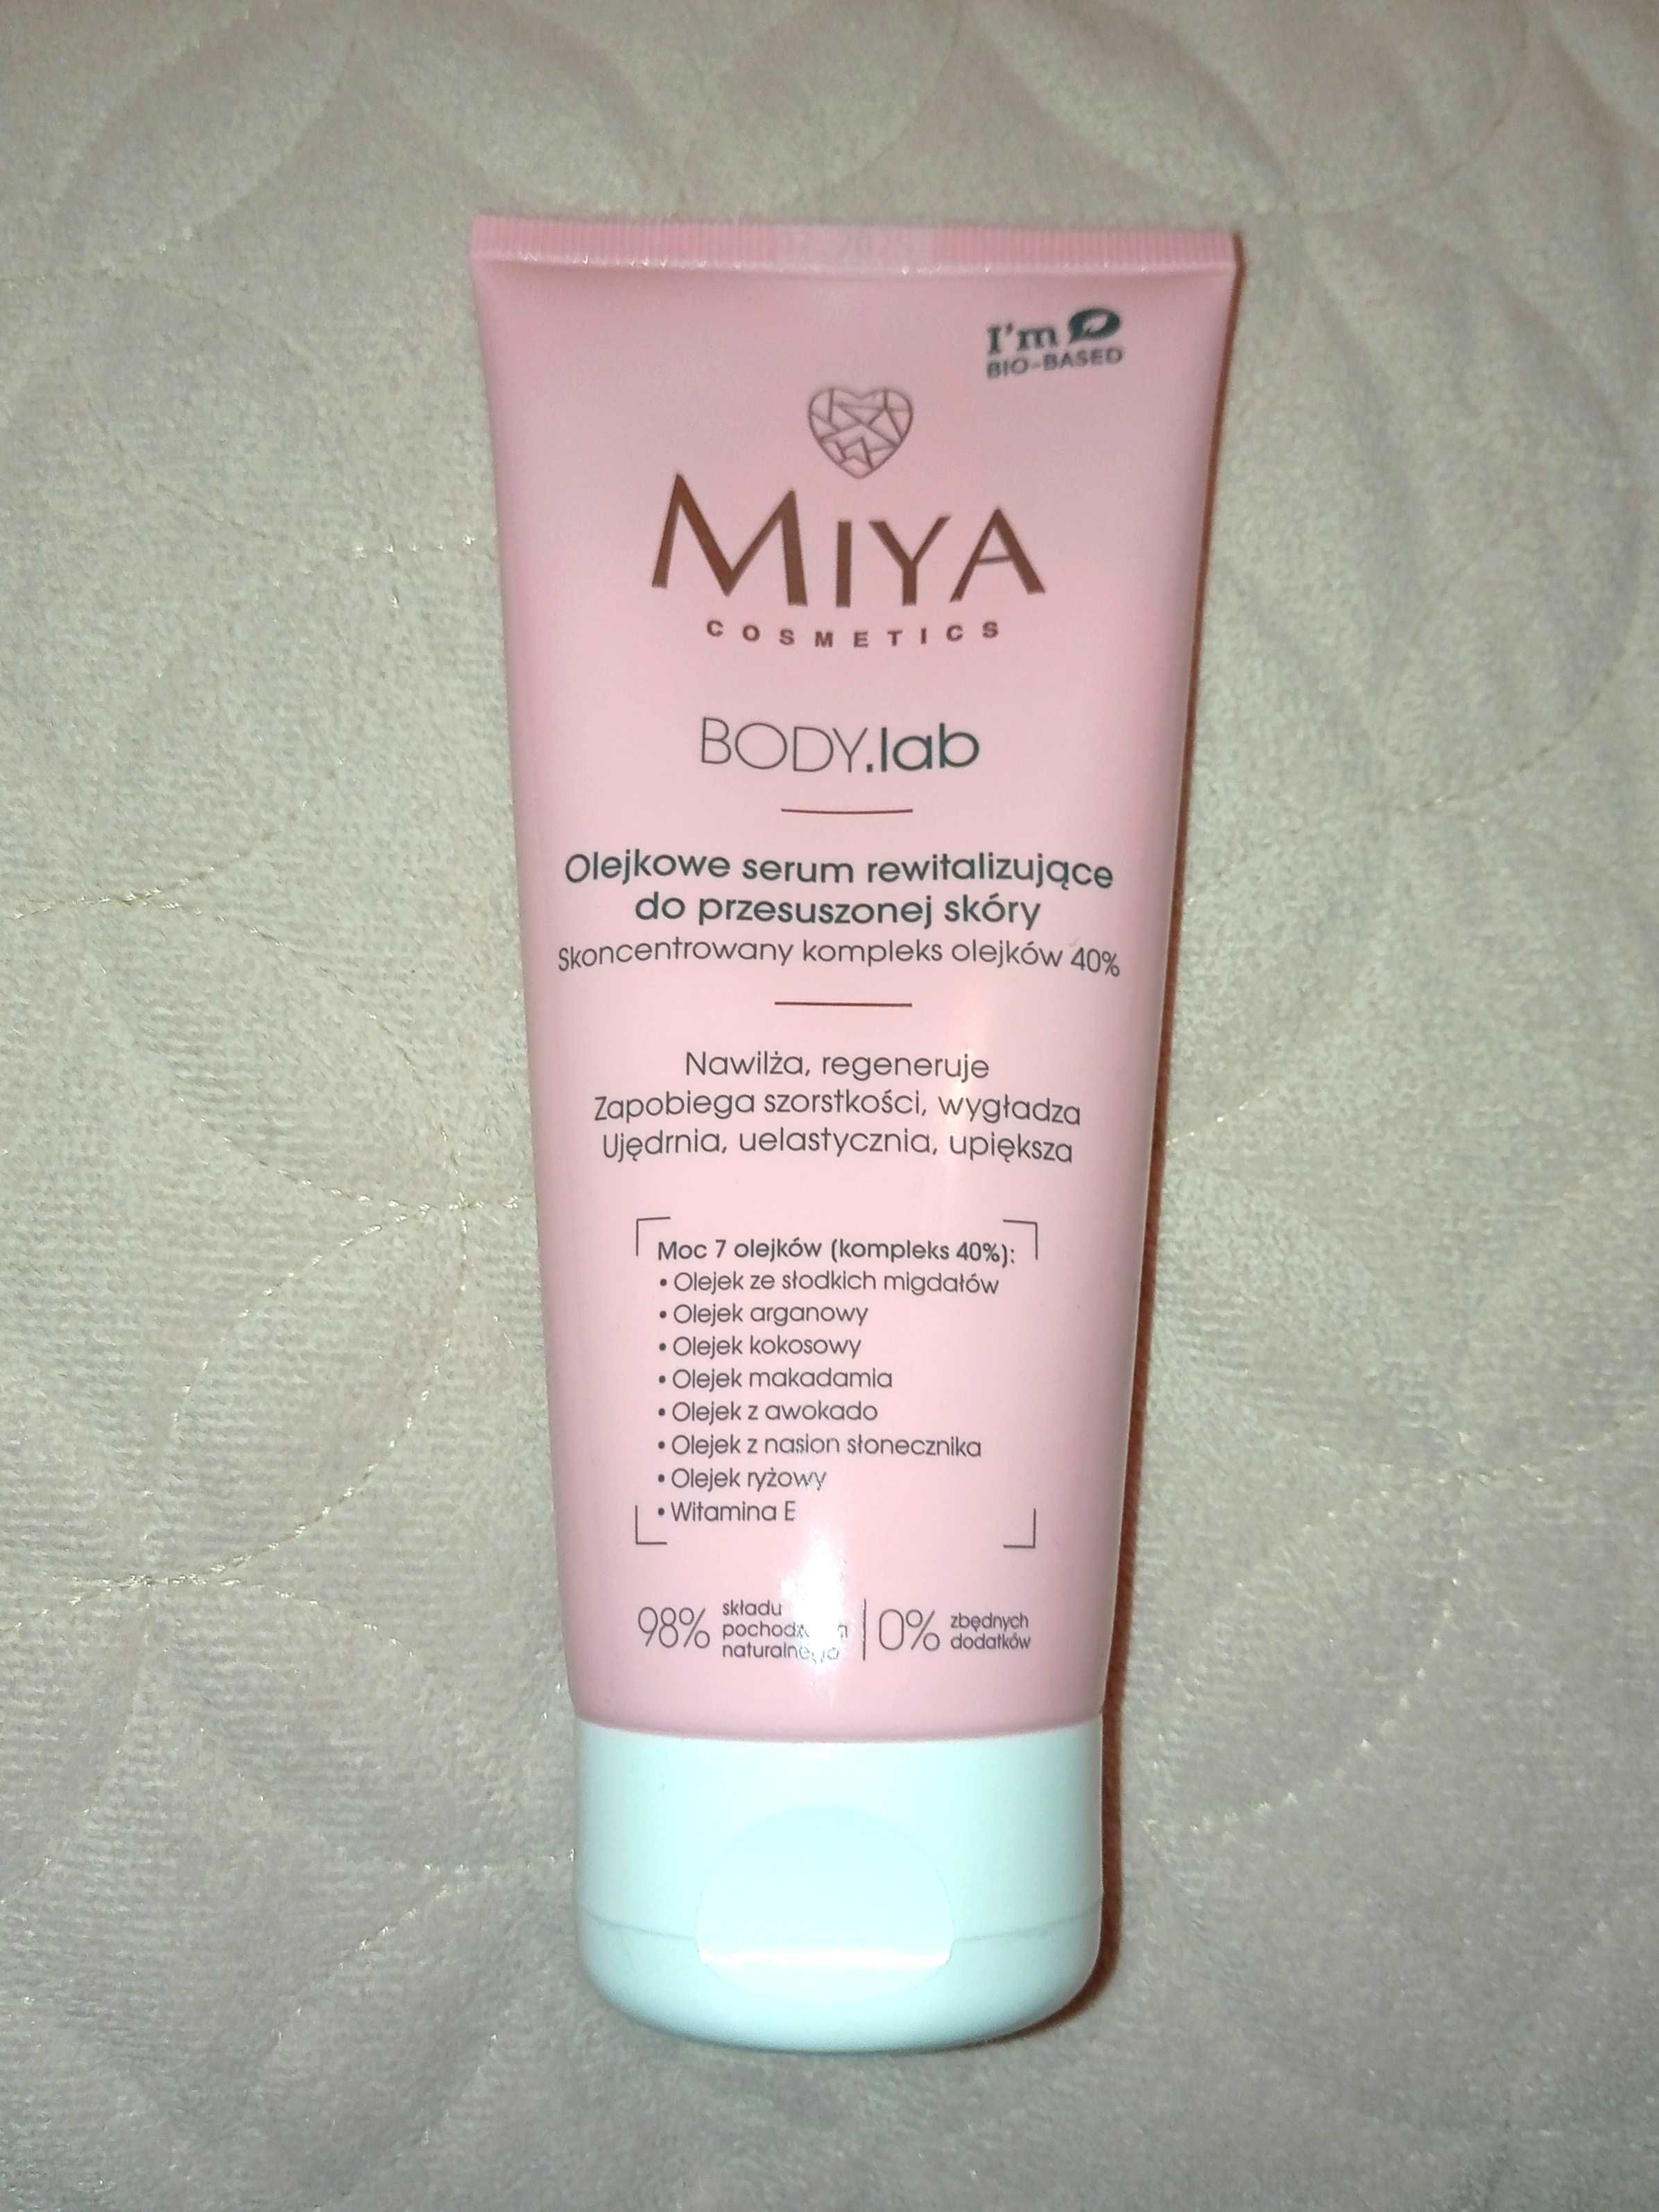 MIYA Cosmetics - olejkowe serum rewitalizujące do przesuszonej skóry